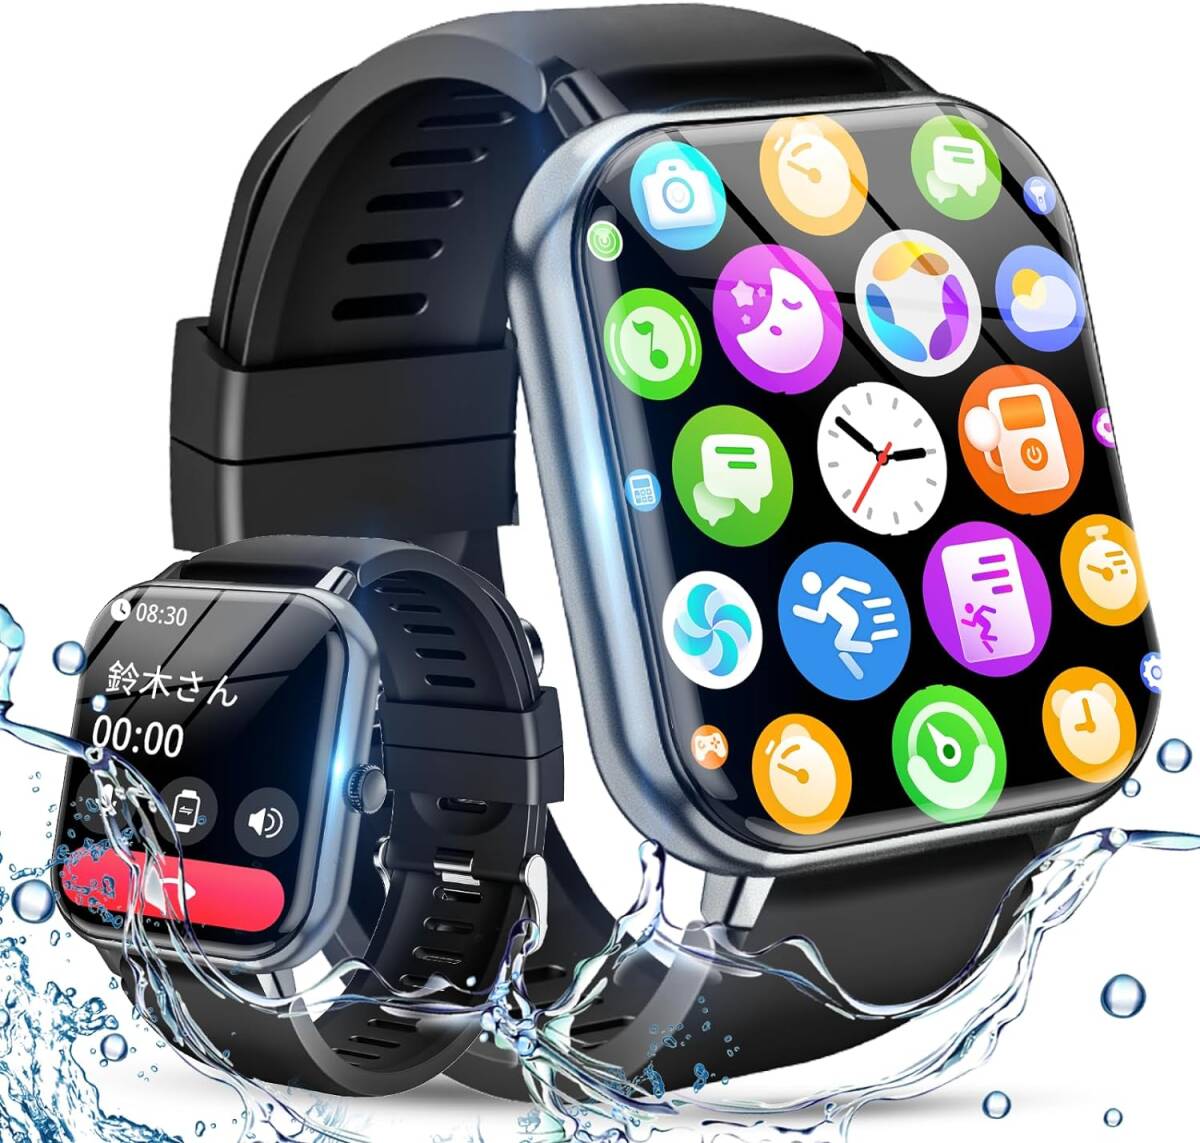 【新品】スマートウォッチ【1.83インチ超大画面】 Smart Watch 着信/Line/メッセージ通知 230mAh大容量 バッテリー Android/iPhone対応 06の画像1